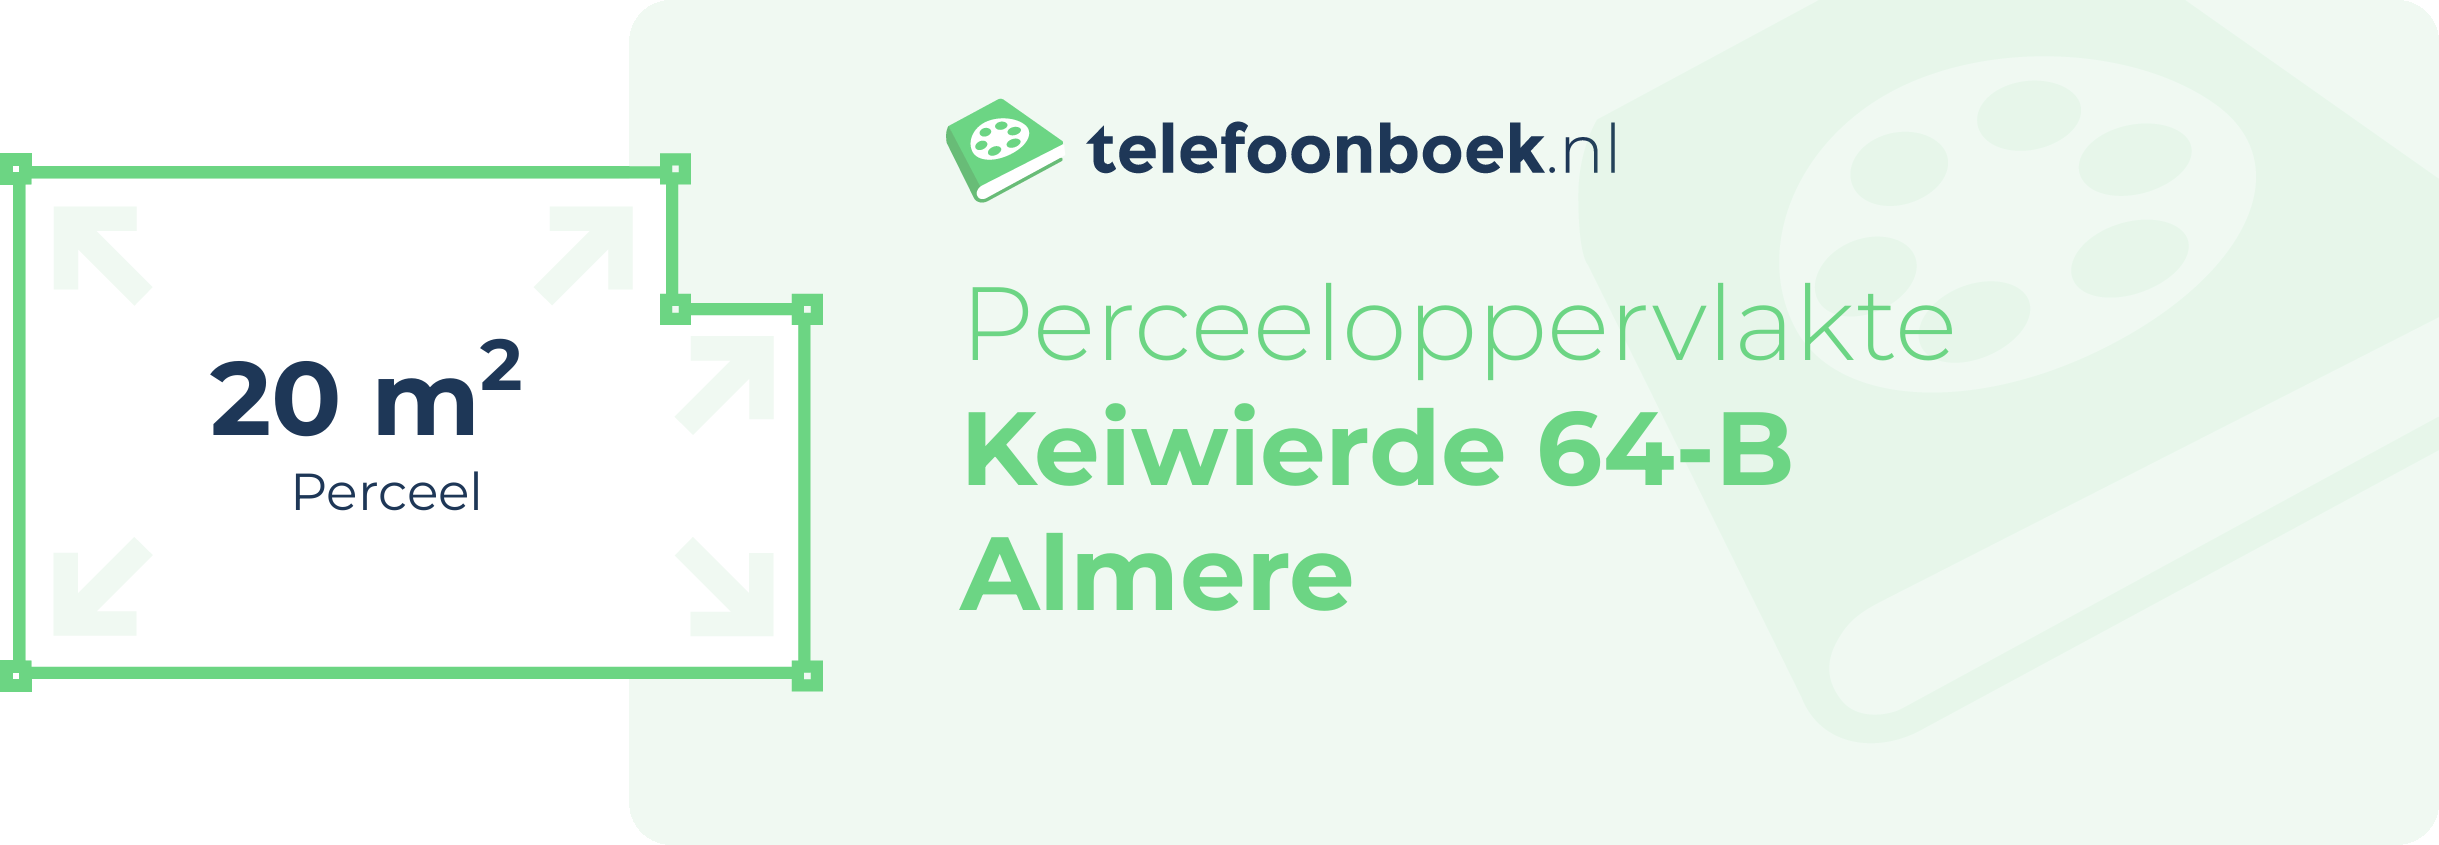 Perceeloppervlakte Keiwierde 64-B Almere